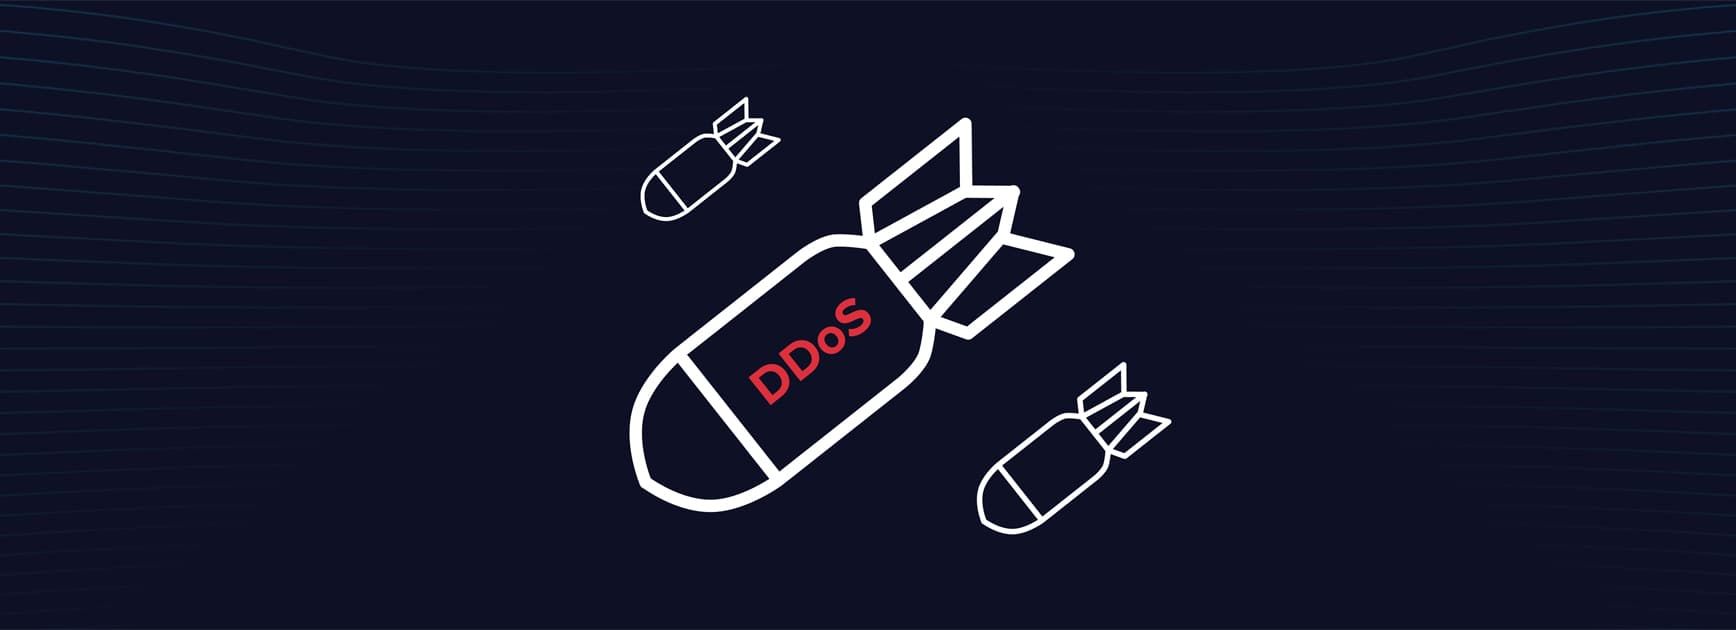 DDOS атака - что это такое и как защититься